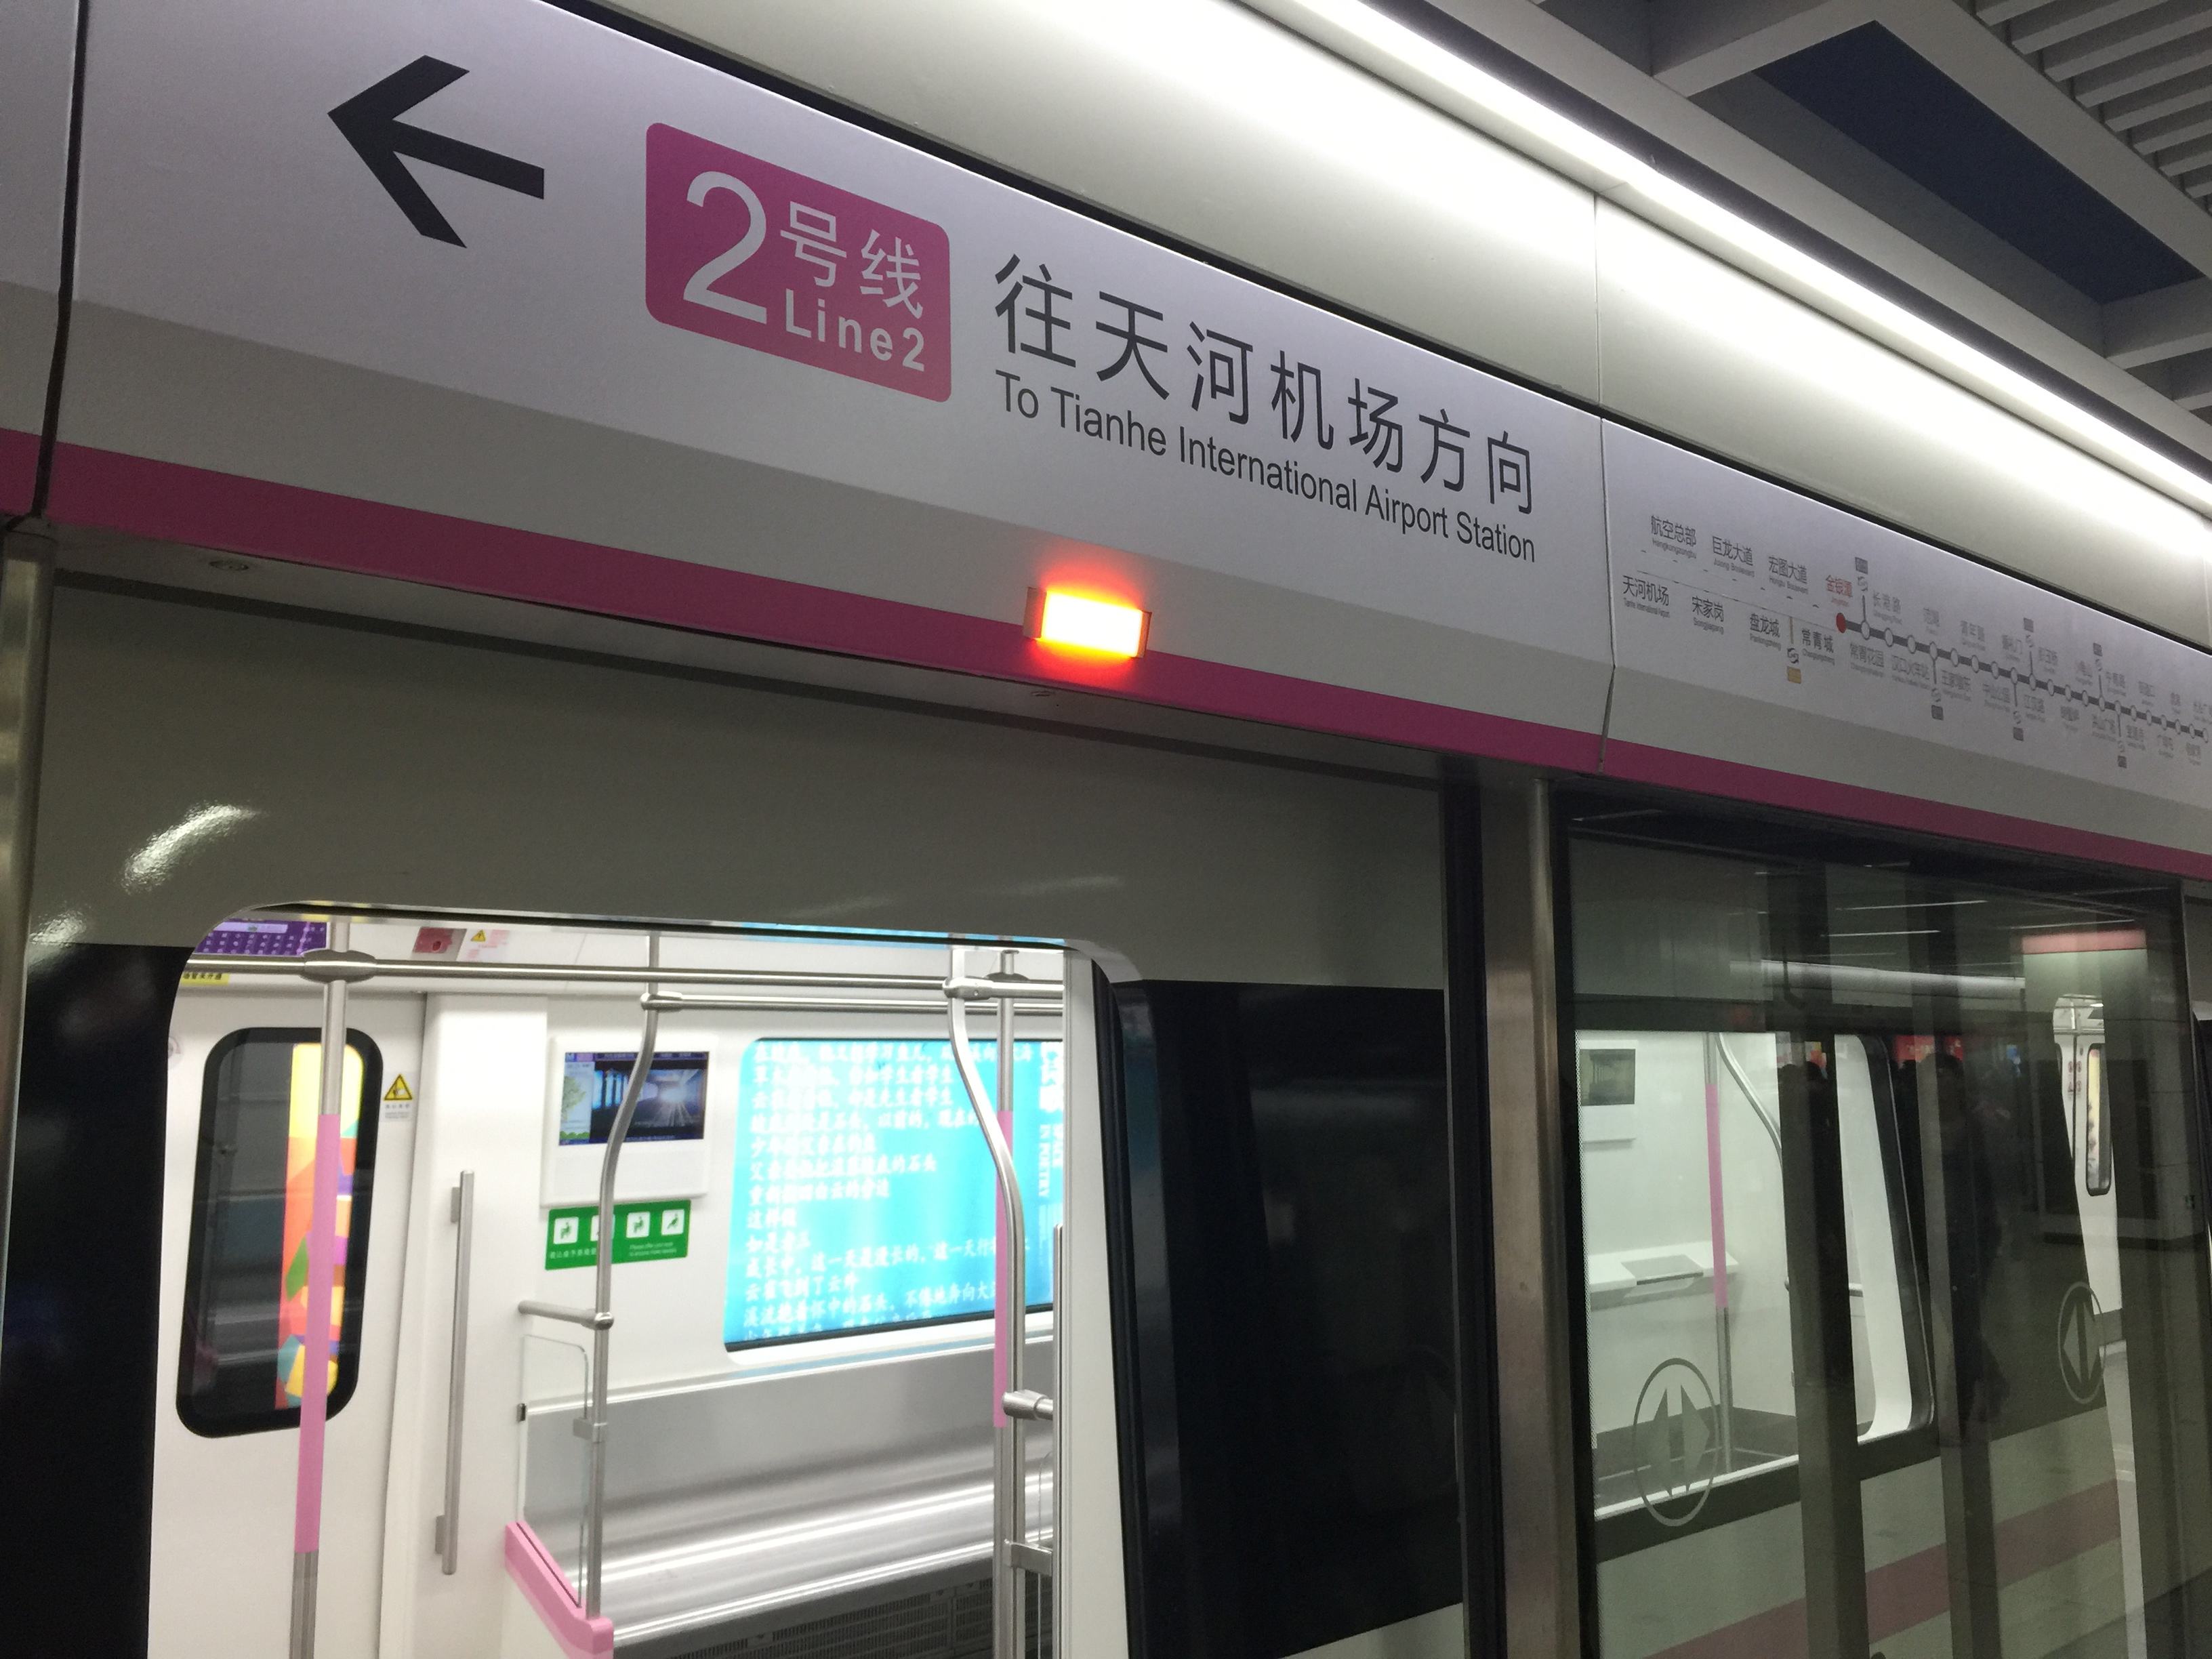 武汉地铁图高清